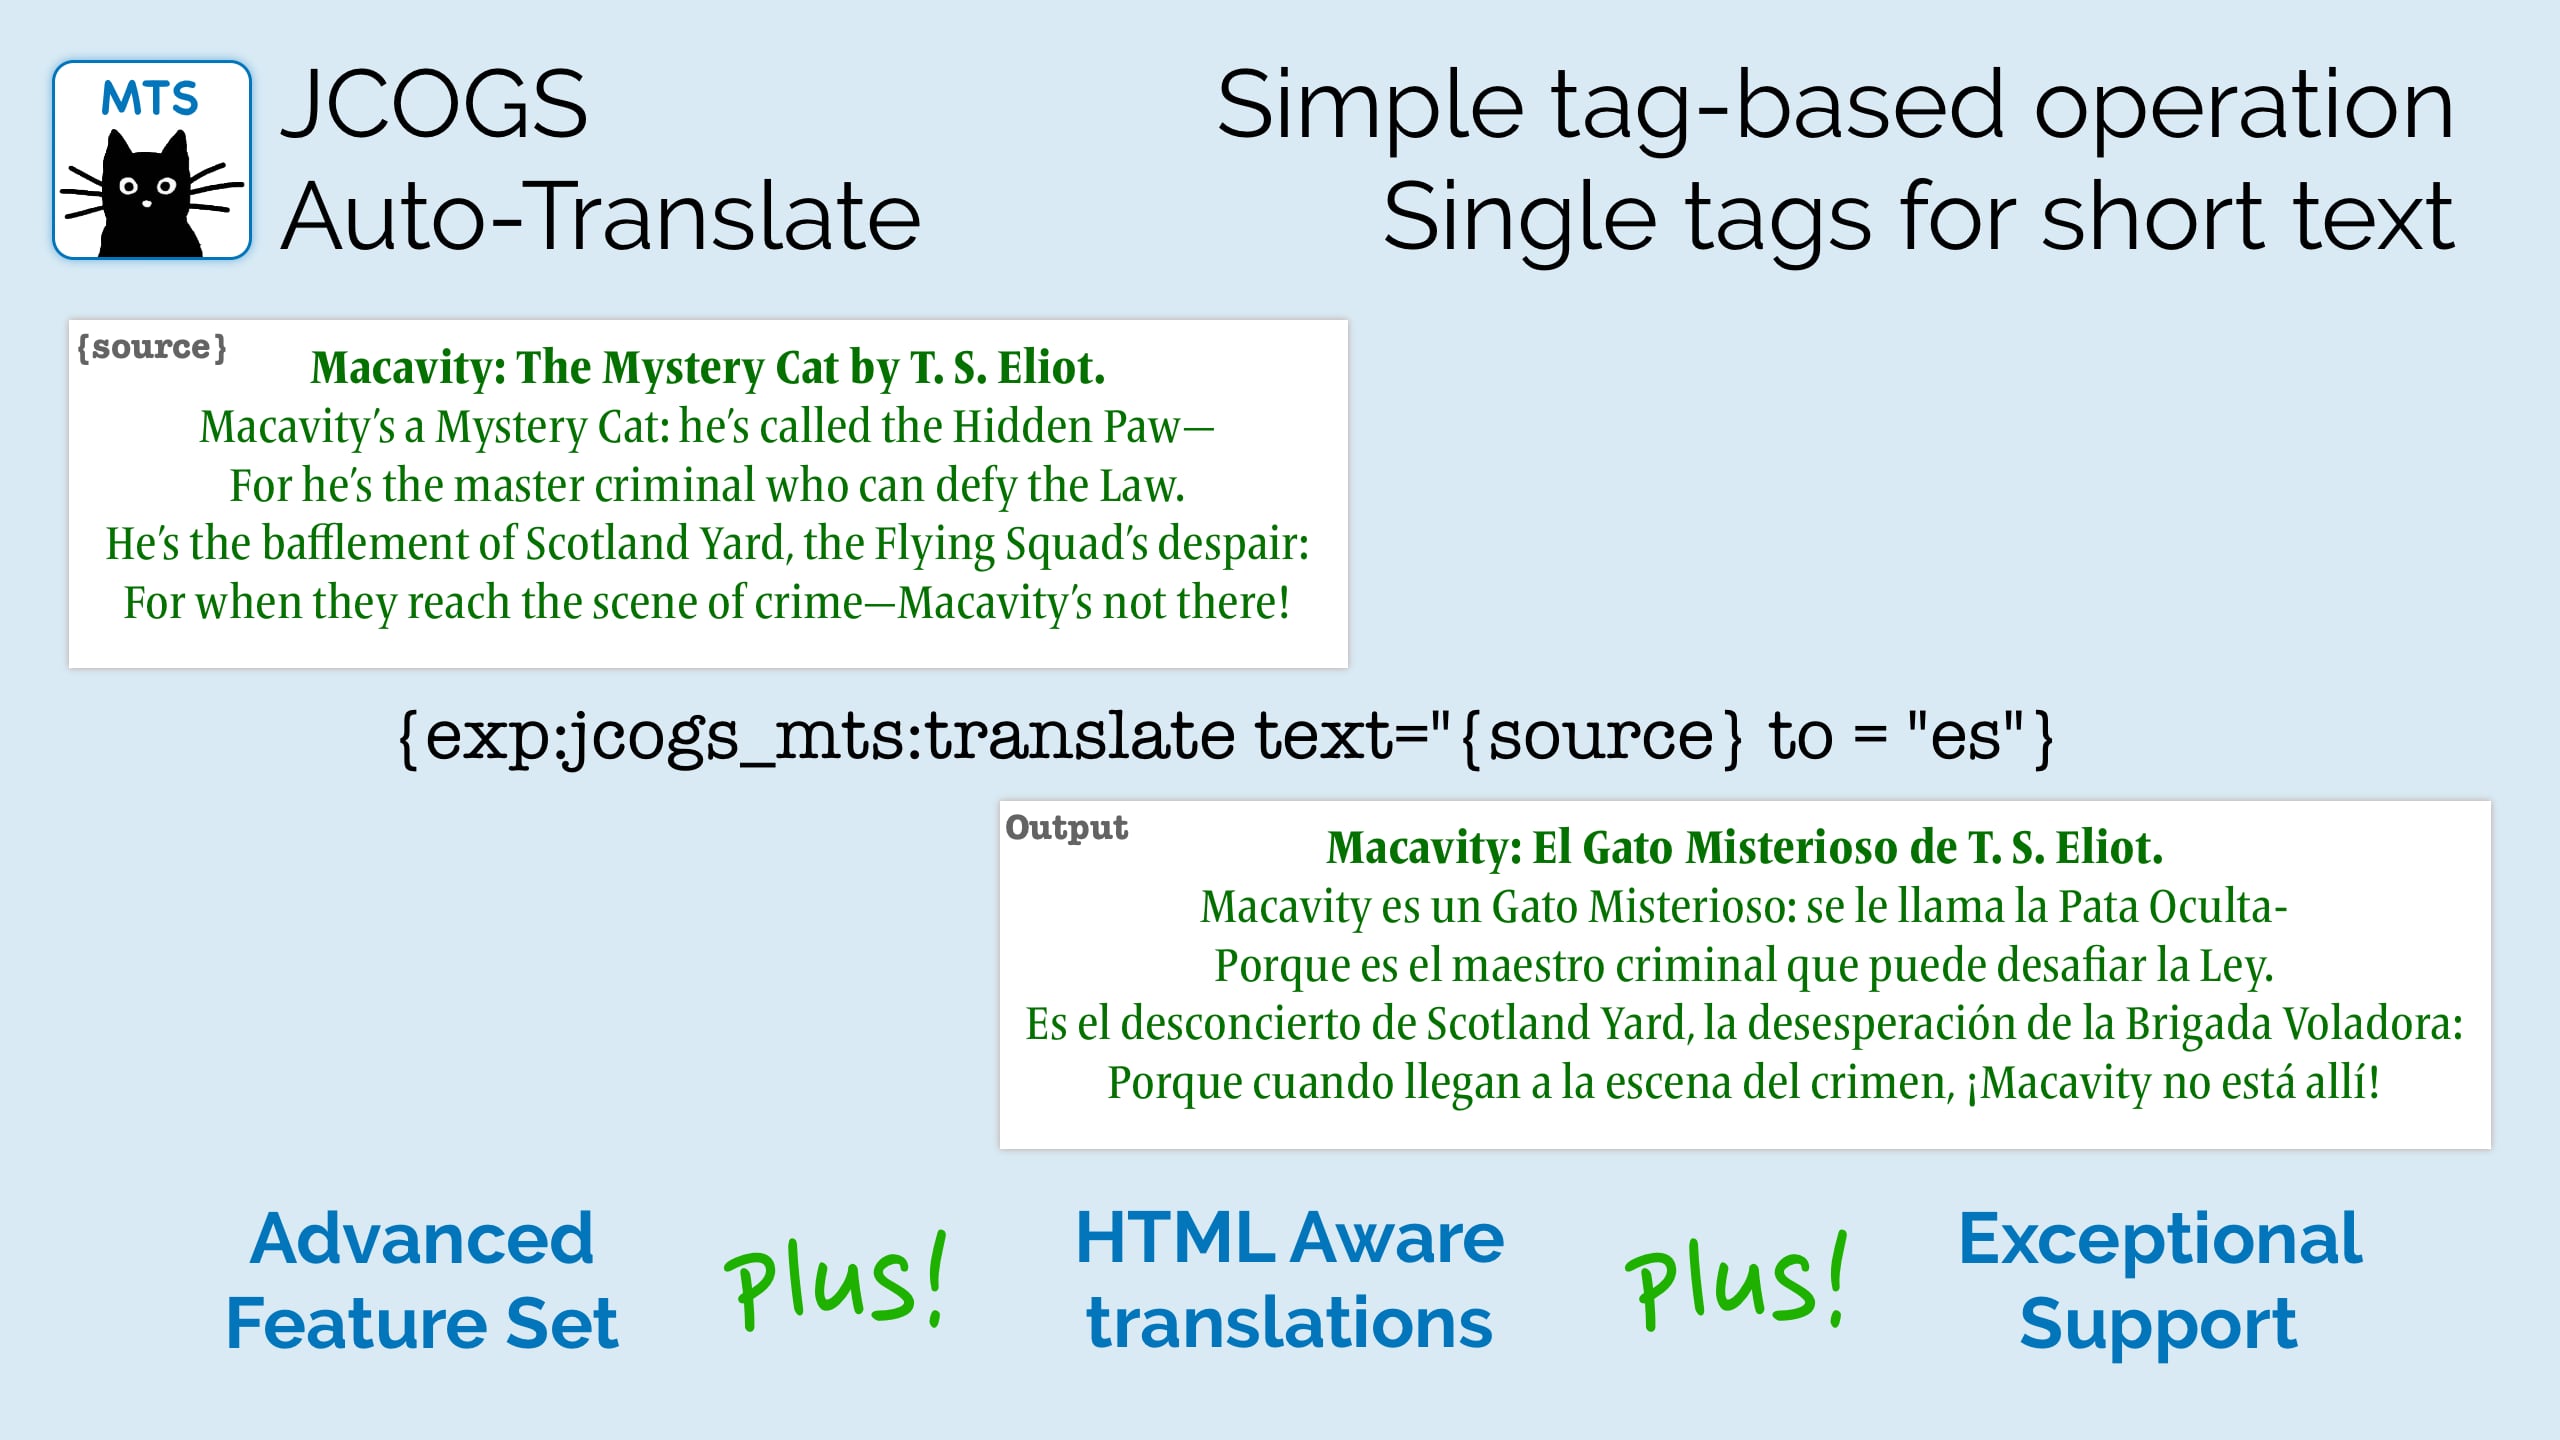 Simple tag-based operation - single tag